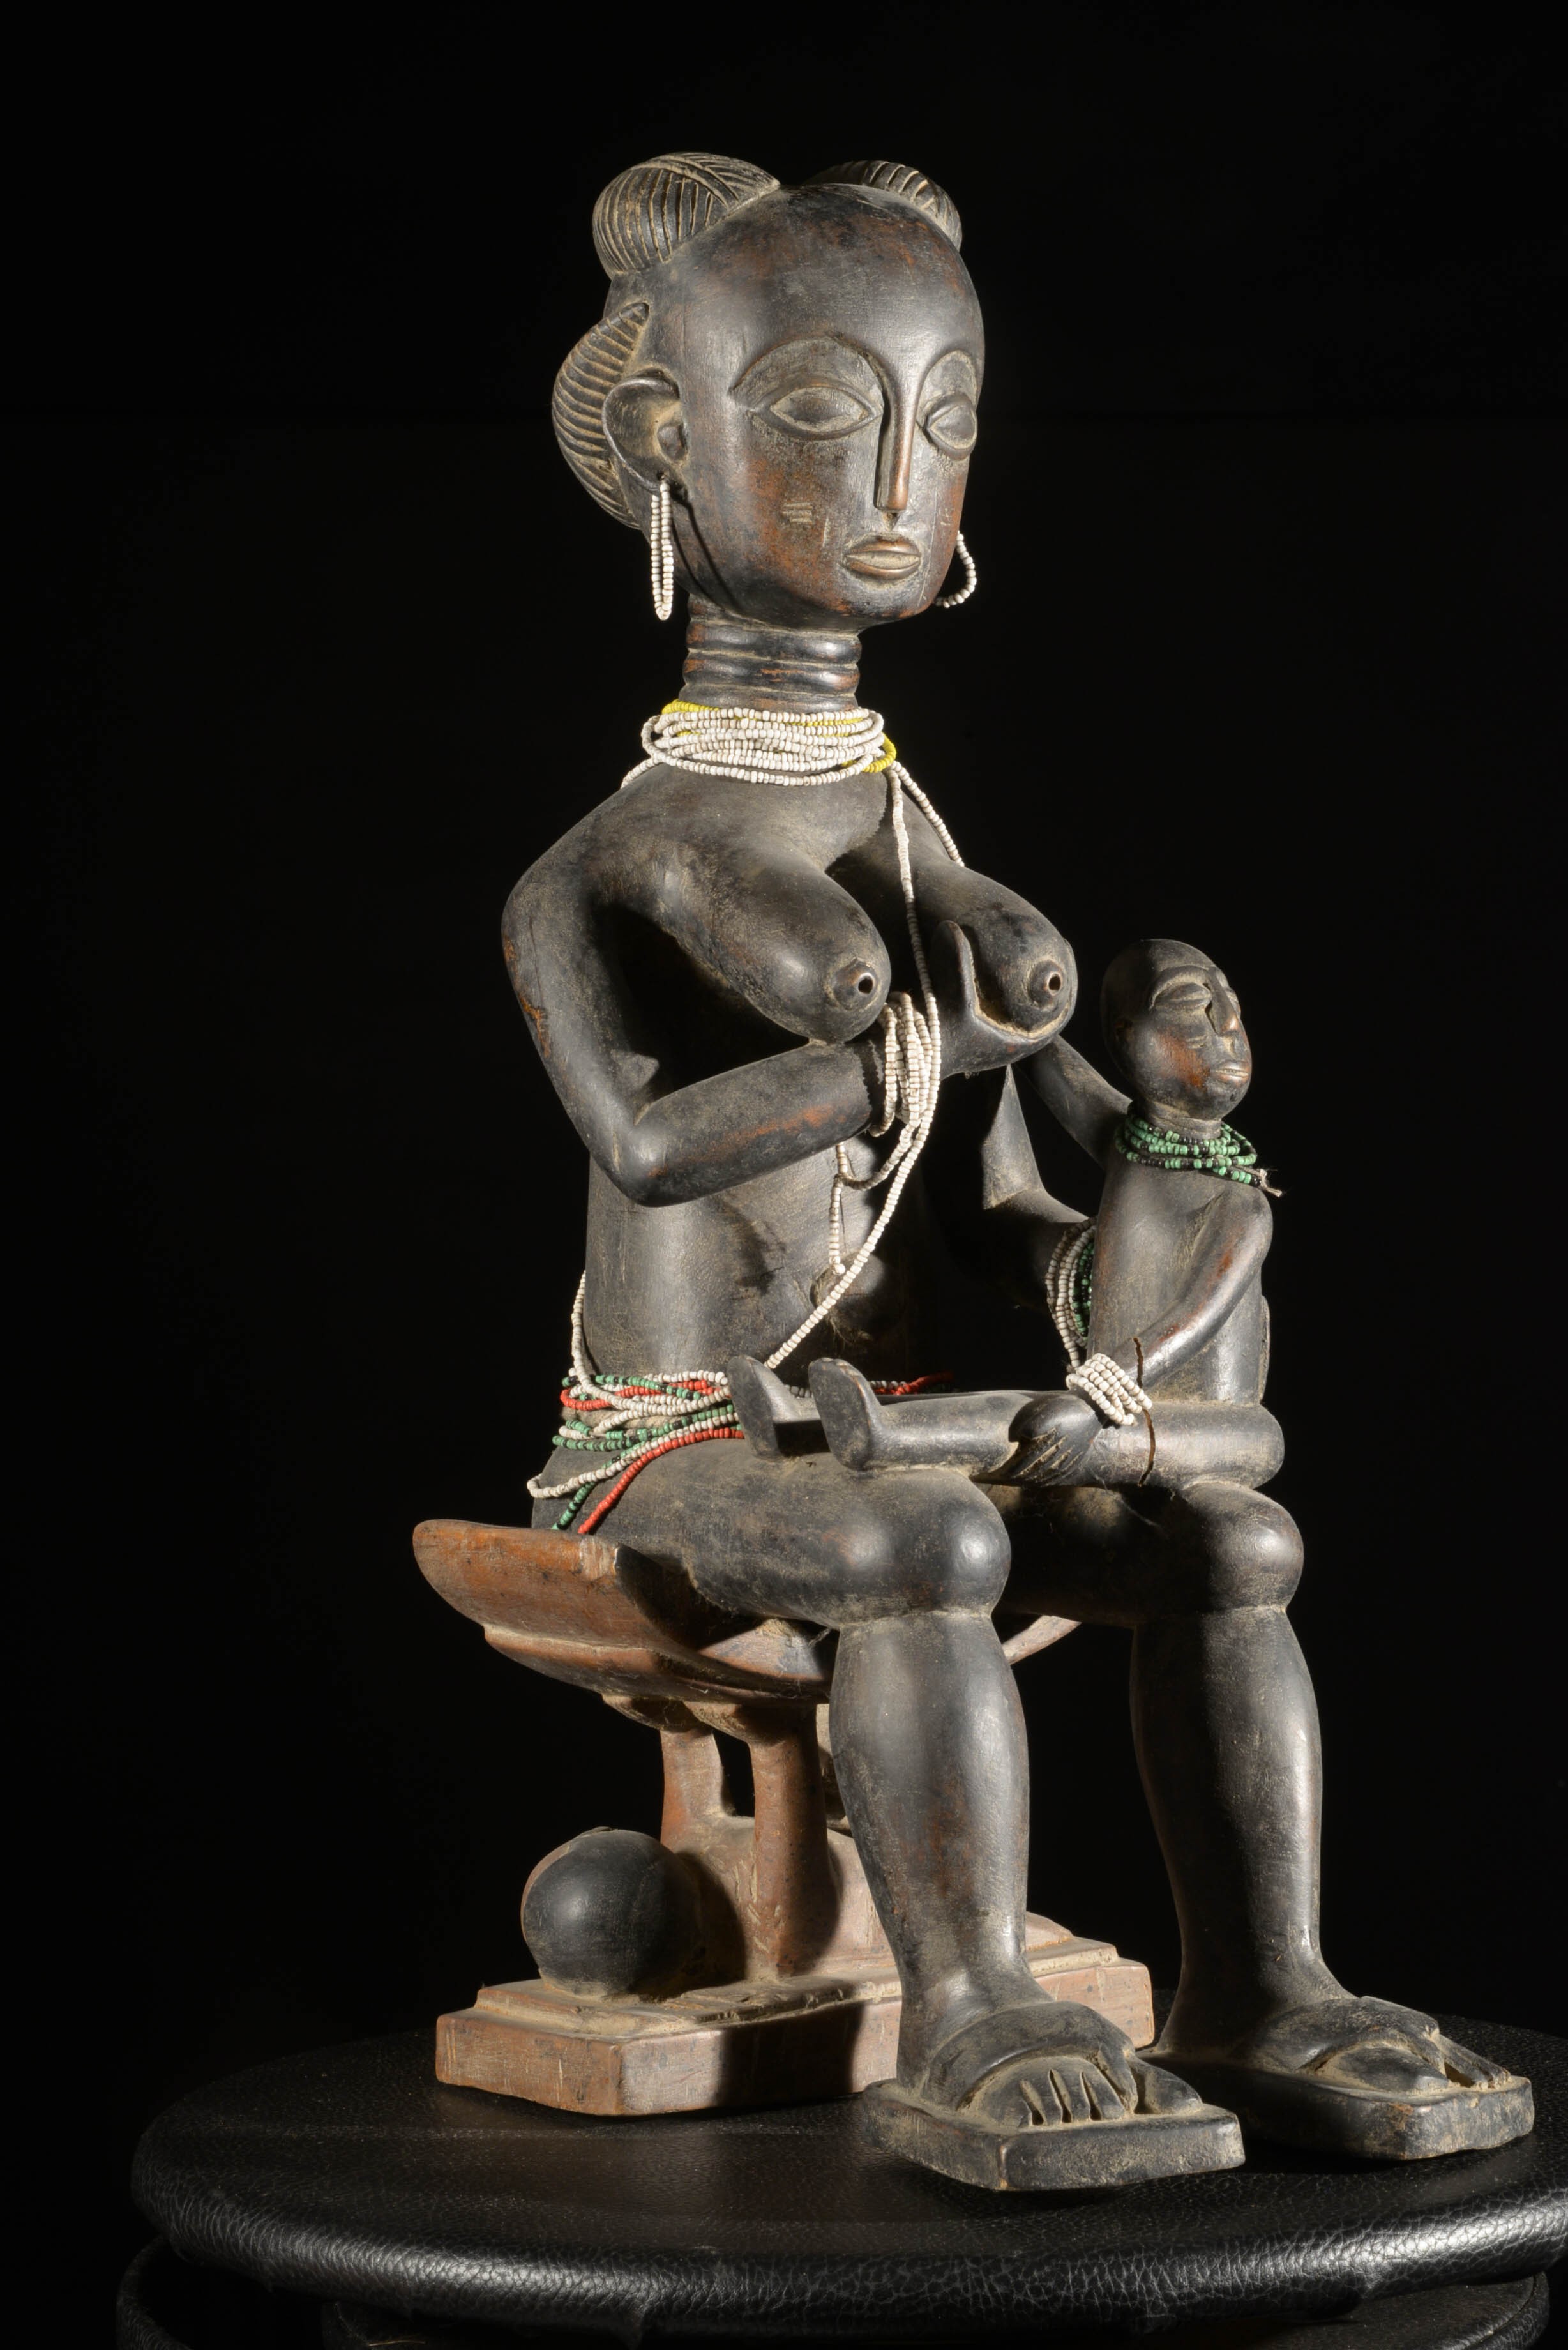 Maternité ou Fertilité - Ashanti - Ghana